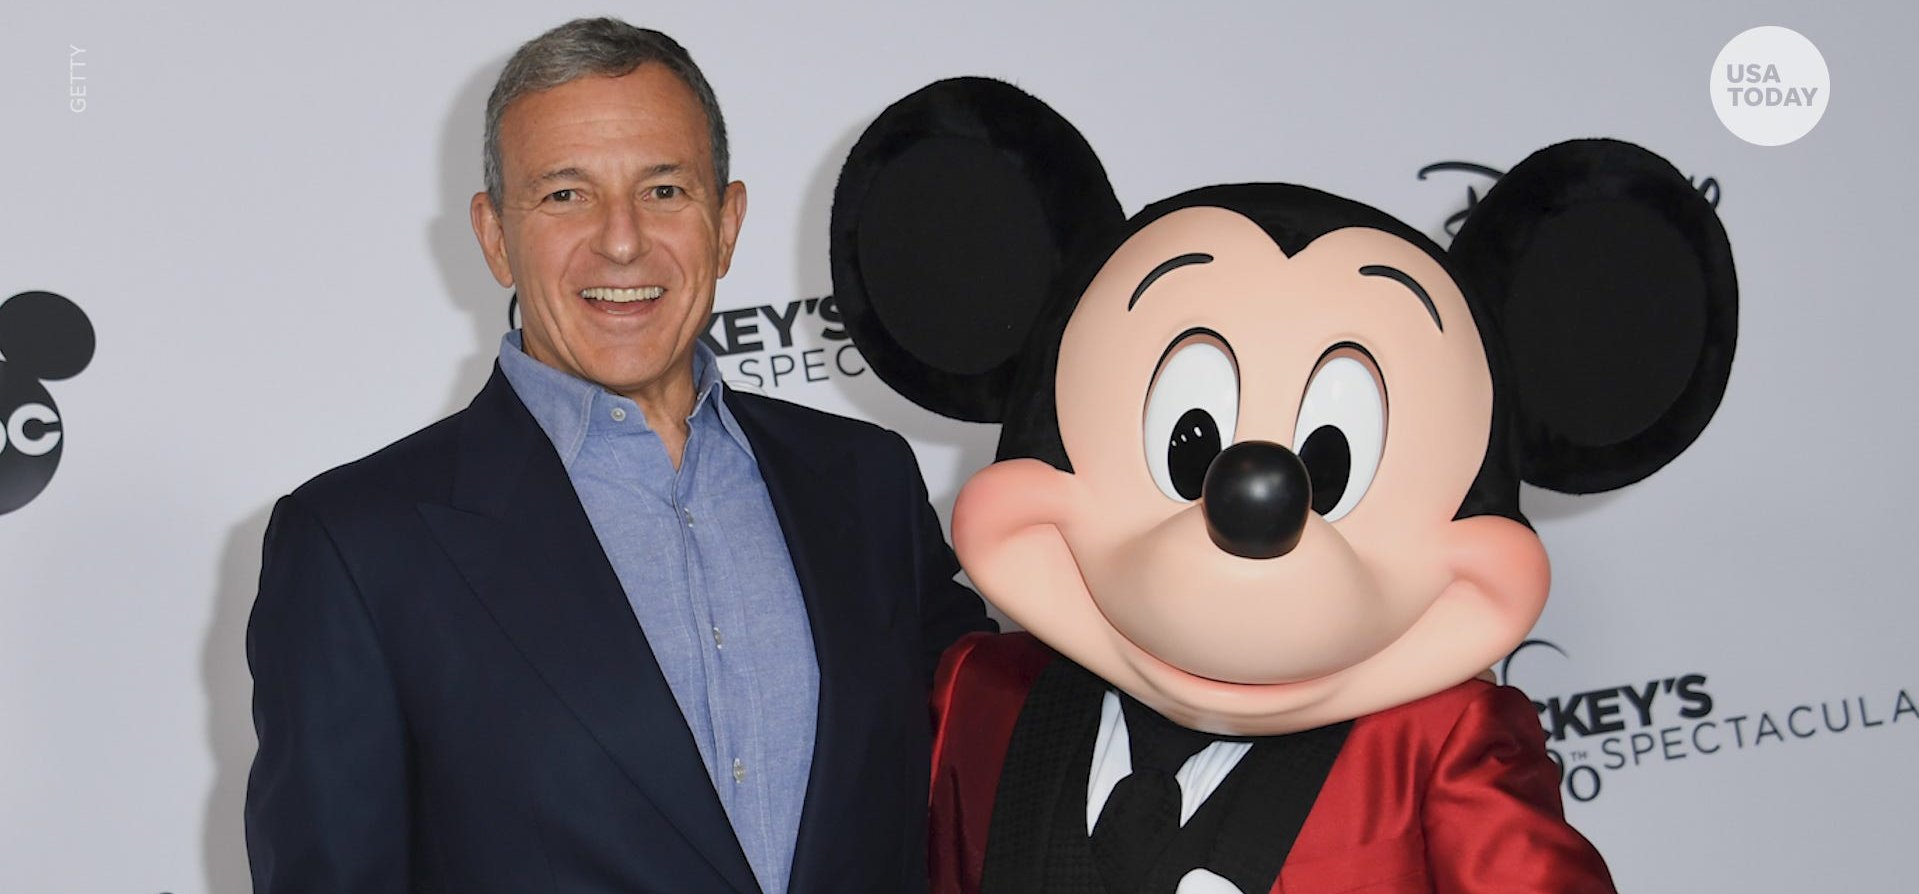 Lemondott a Disney elnöke, de már meg is van az utódja